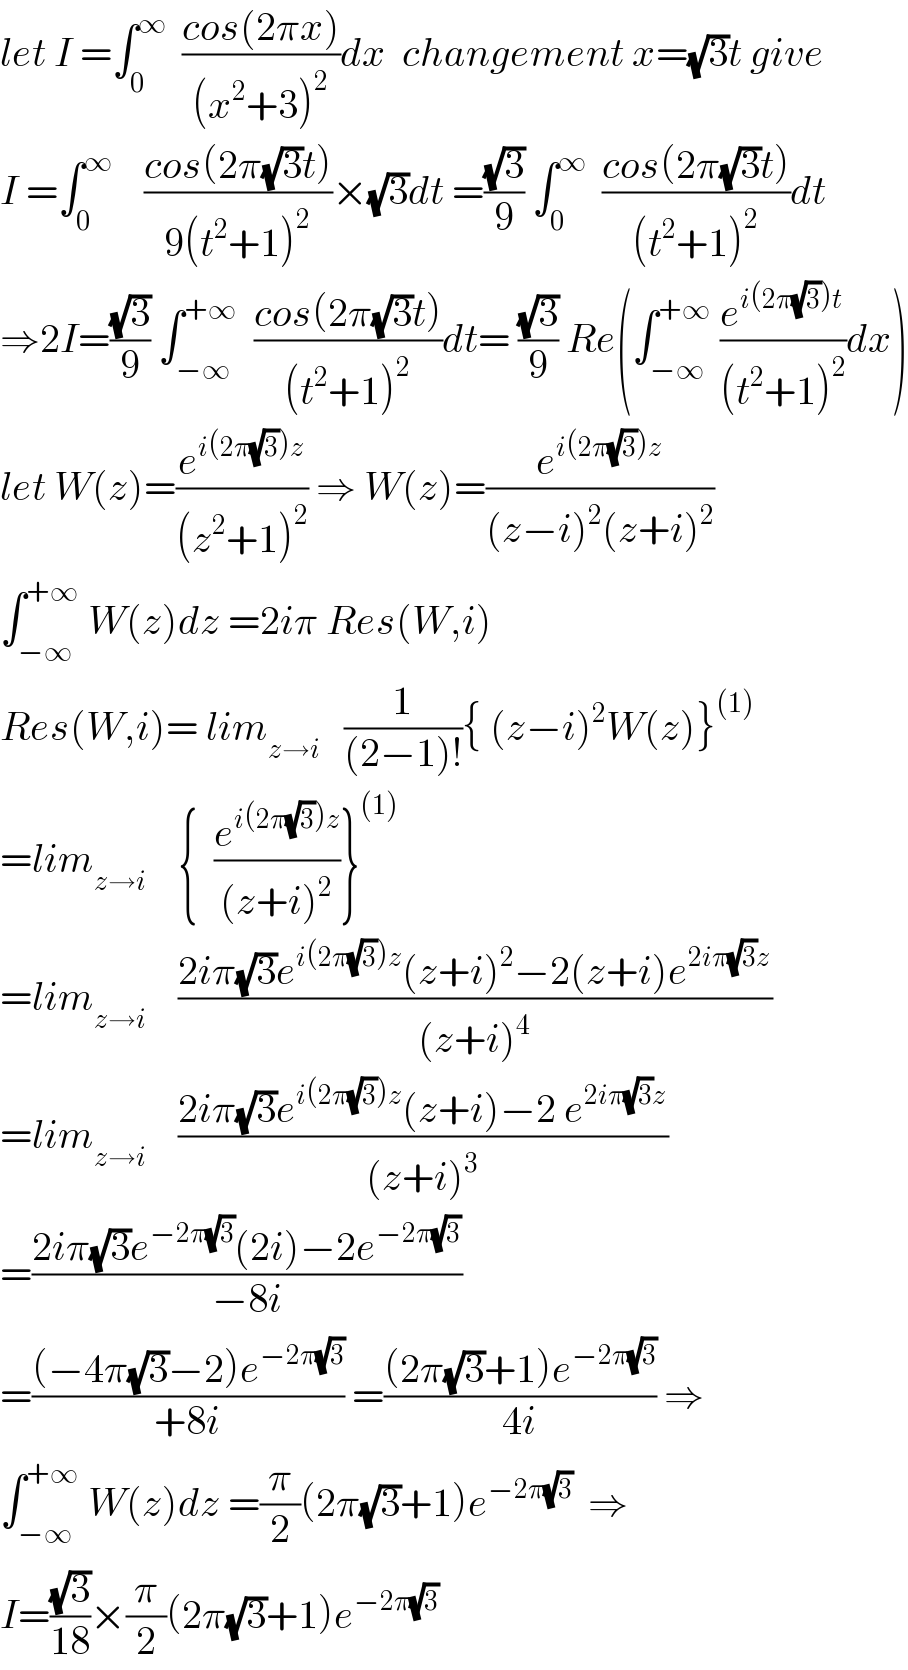 let I =∫_0 ^∞   ((cos(2πx))/((x^2 +3)^2 ))dx  changement x=(√3)t give  I =∫_0 ^∞     ((cos(2π(√3)t))/(9(t^2 +1)^2 ))×(√3)dt =((√3)/9) ∫_0 ^∞   ((cos(2π(√3)t))/((t^2 +1)^2 ))dt  ⇒2I=((√3)/9) ∫_(−∞) ^(+∞)   ((cos(2π(√3)t))/((t^2 +1)^2 ))dt= ((√3)/9) Re(∫_(−∞) ^(+∞)  (e^(i(2π(√3))t) /((t^2 +1)^2 ))dx)  let W(z)=(e^(i(2π(√3))z) /((z^2 +1)^2 )) ⇒ W(z)=(e^(i(2π(√3))z) /((z−i)^2 (z+i)^2 ))  ∫_(−∞) ^(+∞)  W(z)dz =2iπ Res(W,i)  Res(W,i)= lim_(z→i)    (1/((2−1)!)){ (z−i)^2 W(z)}^((1))   =lim_(z→i)     {  (e^(i(2π(√3))z) /((z+i)^2 ))}^((1))   =lim_(z→i)     ((2iπ(√3)e^(i(2π(√3))z) (z+i)^2 −2(z+i)e^(2iπ(√3)z) )/((z+i)^4 ))  =lim_(z→i)     ((2iπ(√3)e^(i(2π(√3))z) (z+i)−2 e^(2iπ(√3)z) )/((z+i)^3 ))  =((2iπ(√3)e^(−2π(√3)) (2i)−2e^(−2π(√3)) )/(−8i))  =(((−4π(√3)−2)e^(−2π(√3)) )/(+8i)) =(((2π(√3)+1)e^(−2π(√3)) )/(4i)) ⇒  ∫_(−∞) ^(+∞)  W(z)dz =(π/2)(2π(√3)+1)e^(−2π(√3))   ⇒  I=((√3)/(18))×(π/2)(2π(√3)+1)e^(−2π(√3))   